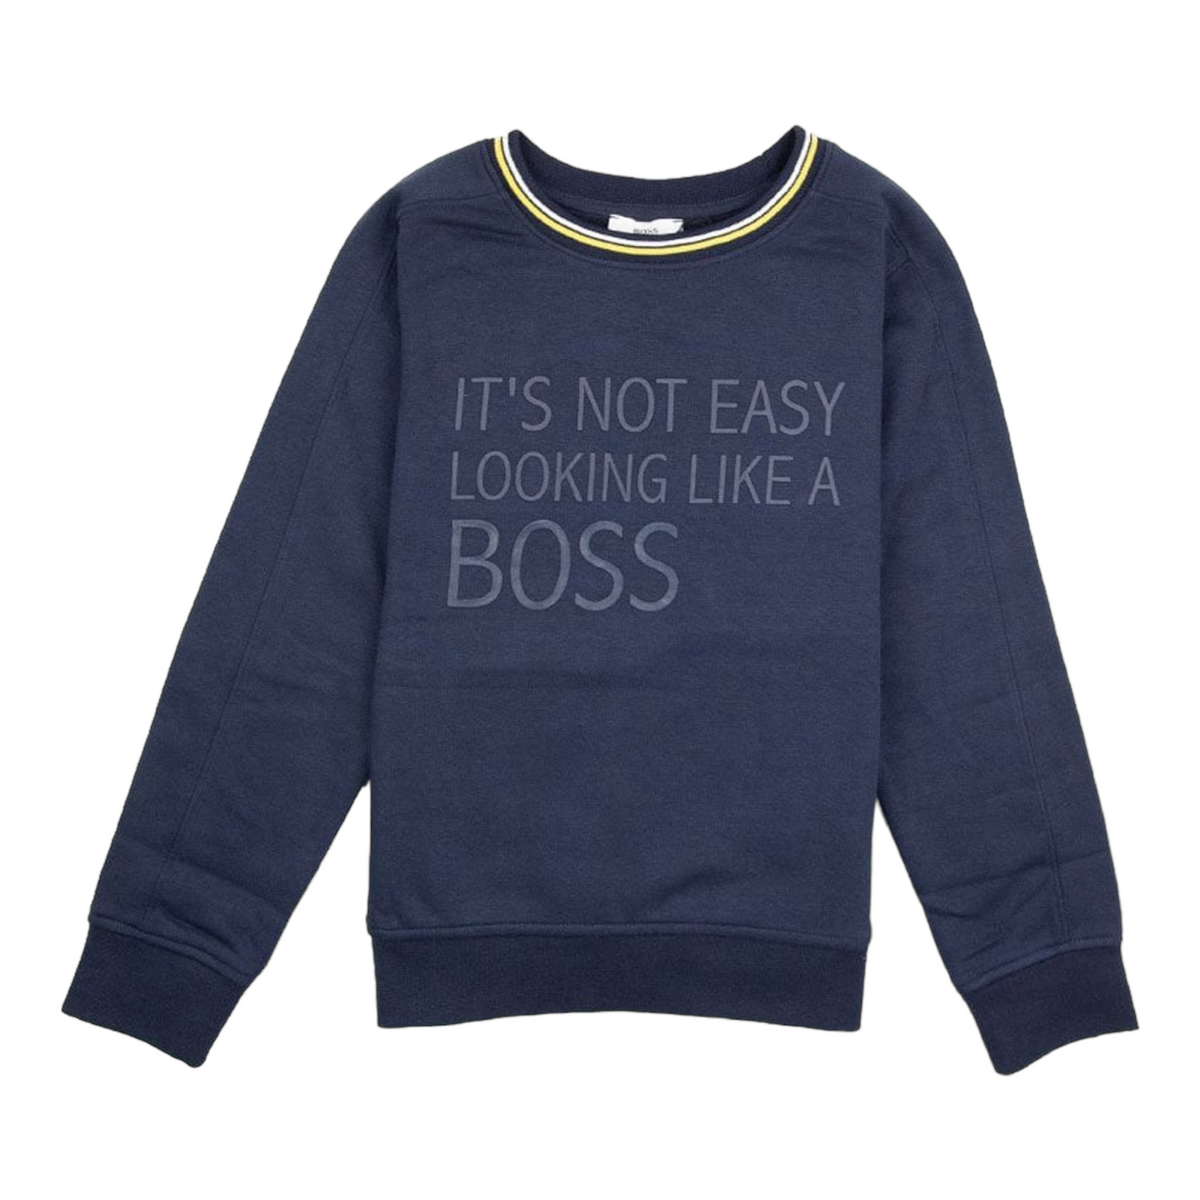 Hugo Boss Kid's It's Not Easy Looking Like A Boss Sweatshirt